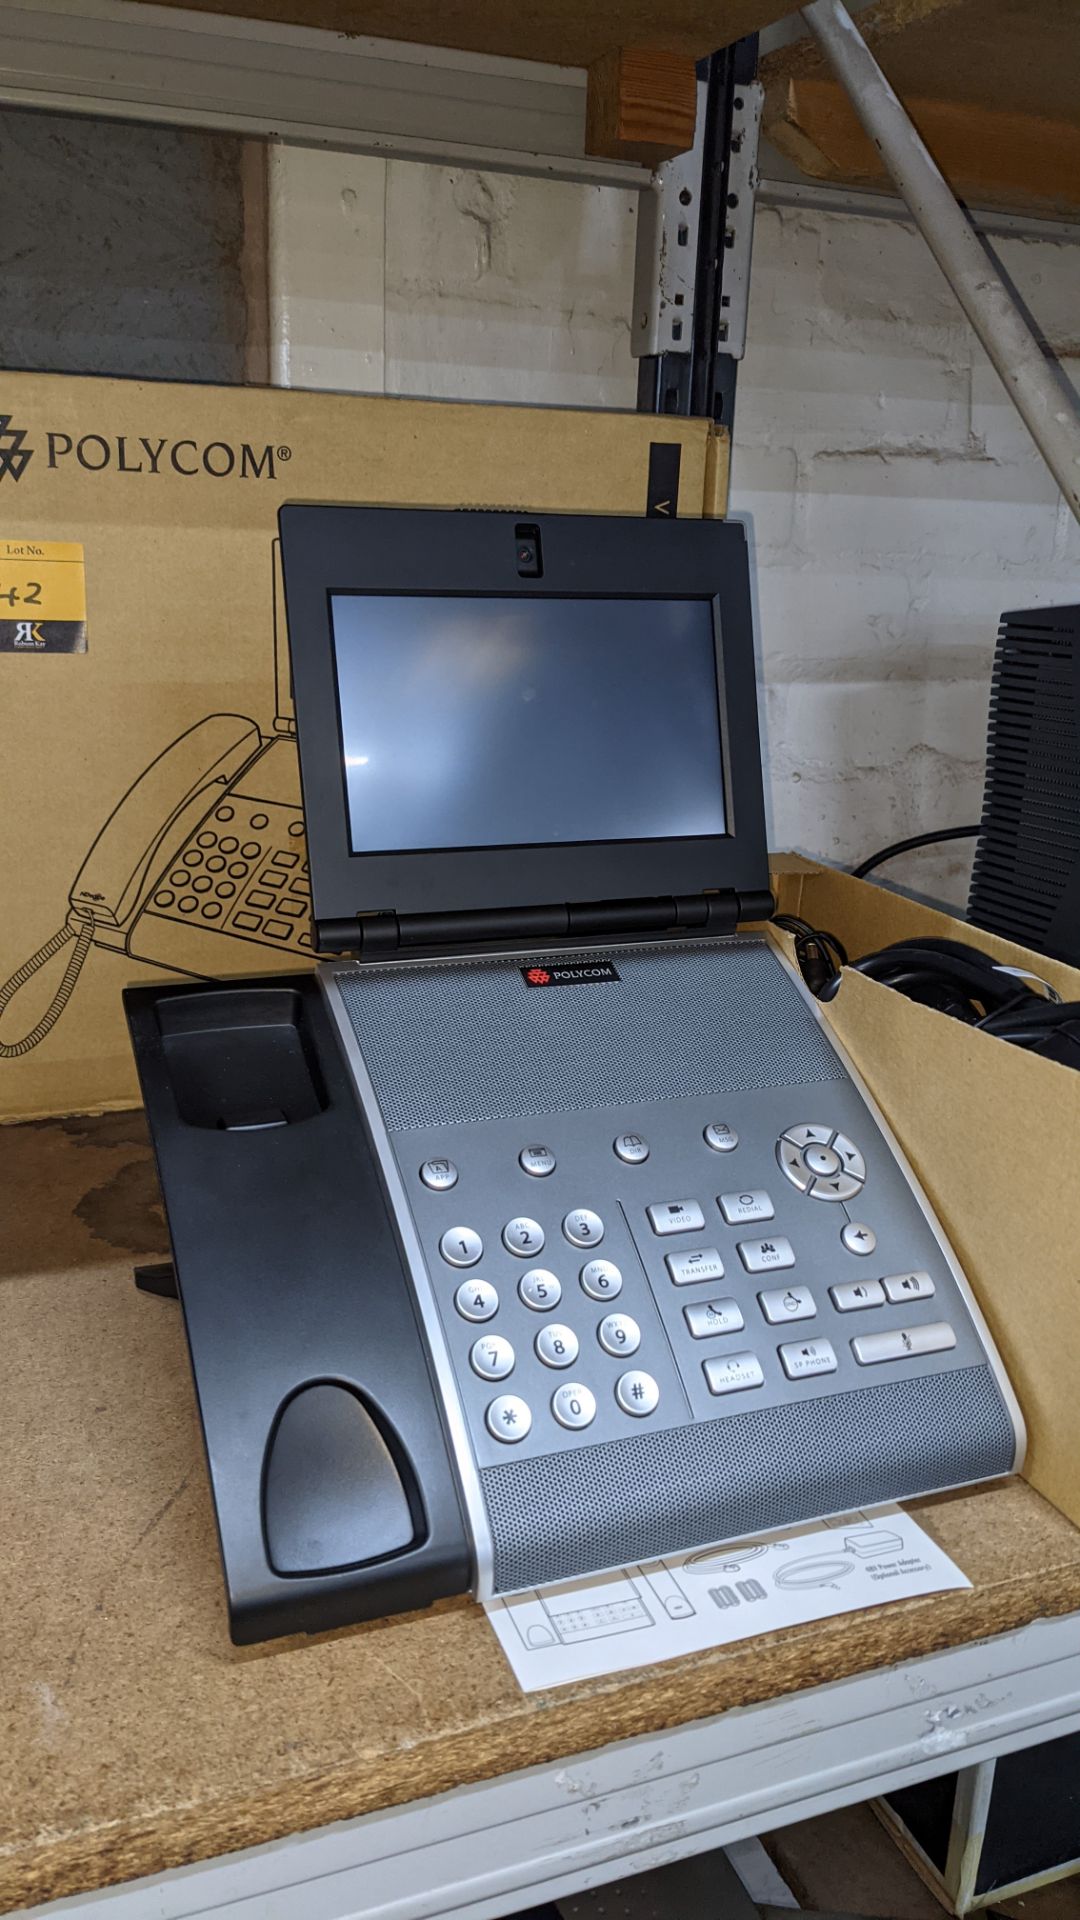 Polycom VVX 1500 business media telephone - Image 11 of 12